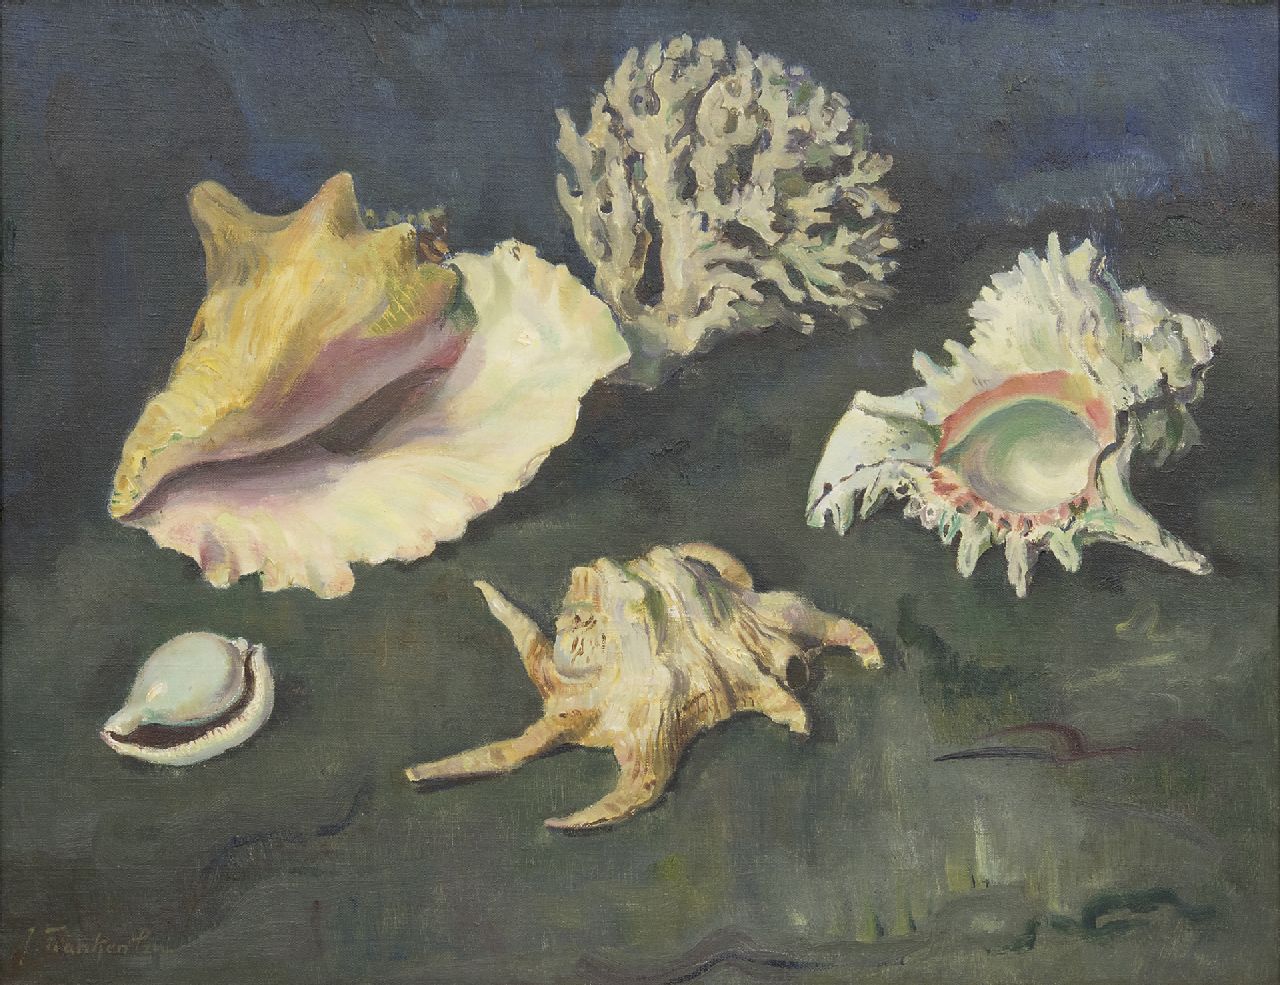 Franken J.P.J.  | Joannes Petrus Josephus 'Jan' Franken, Shells and coral, oil on canvas 50.2 x 65.2 cm, signed l.l.